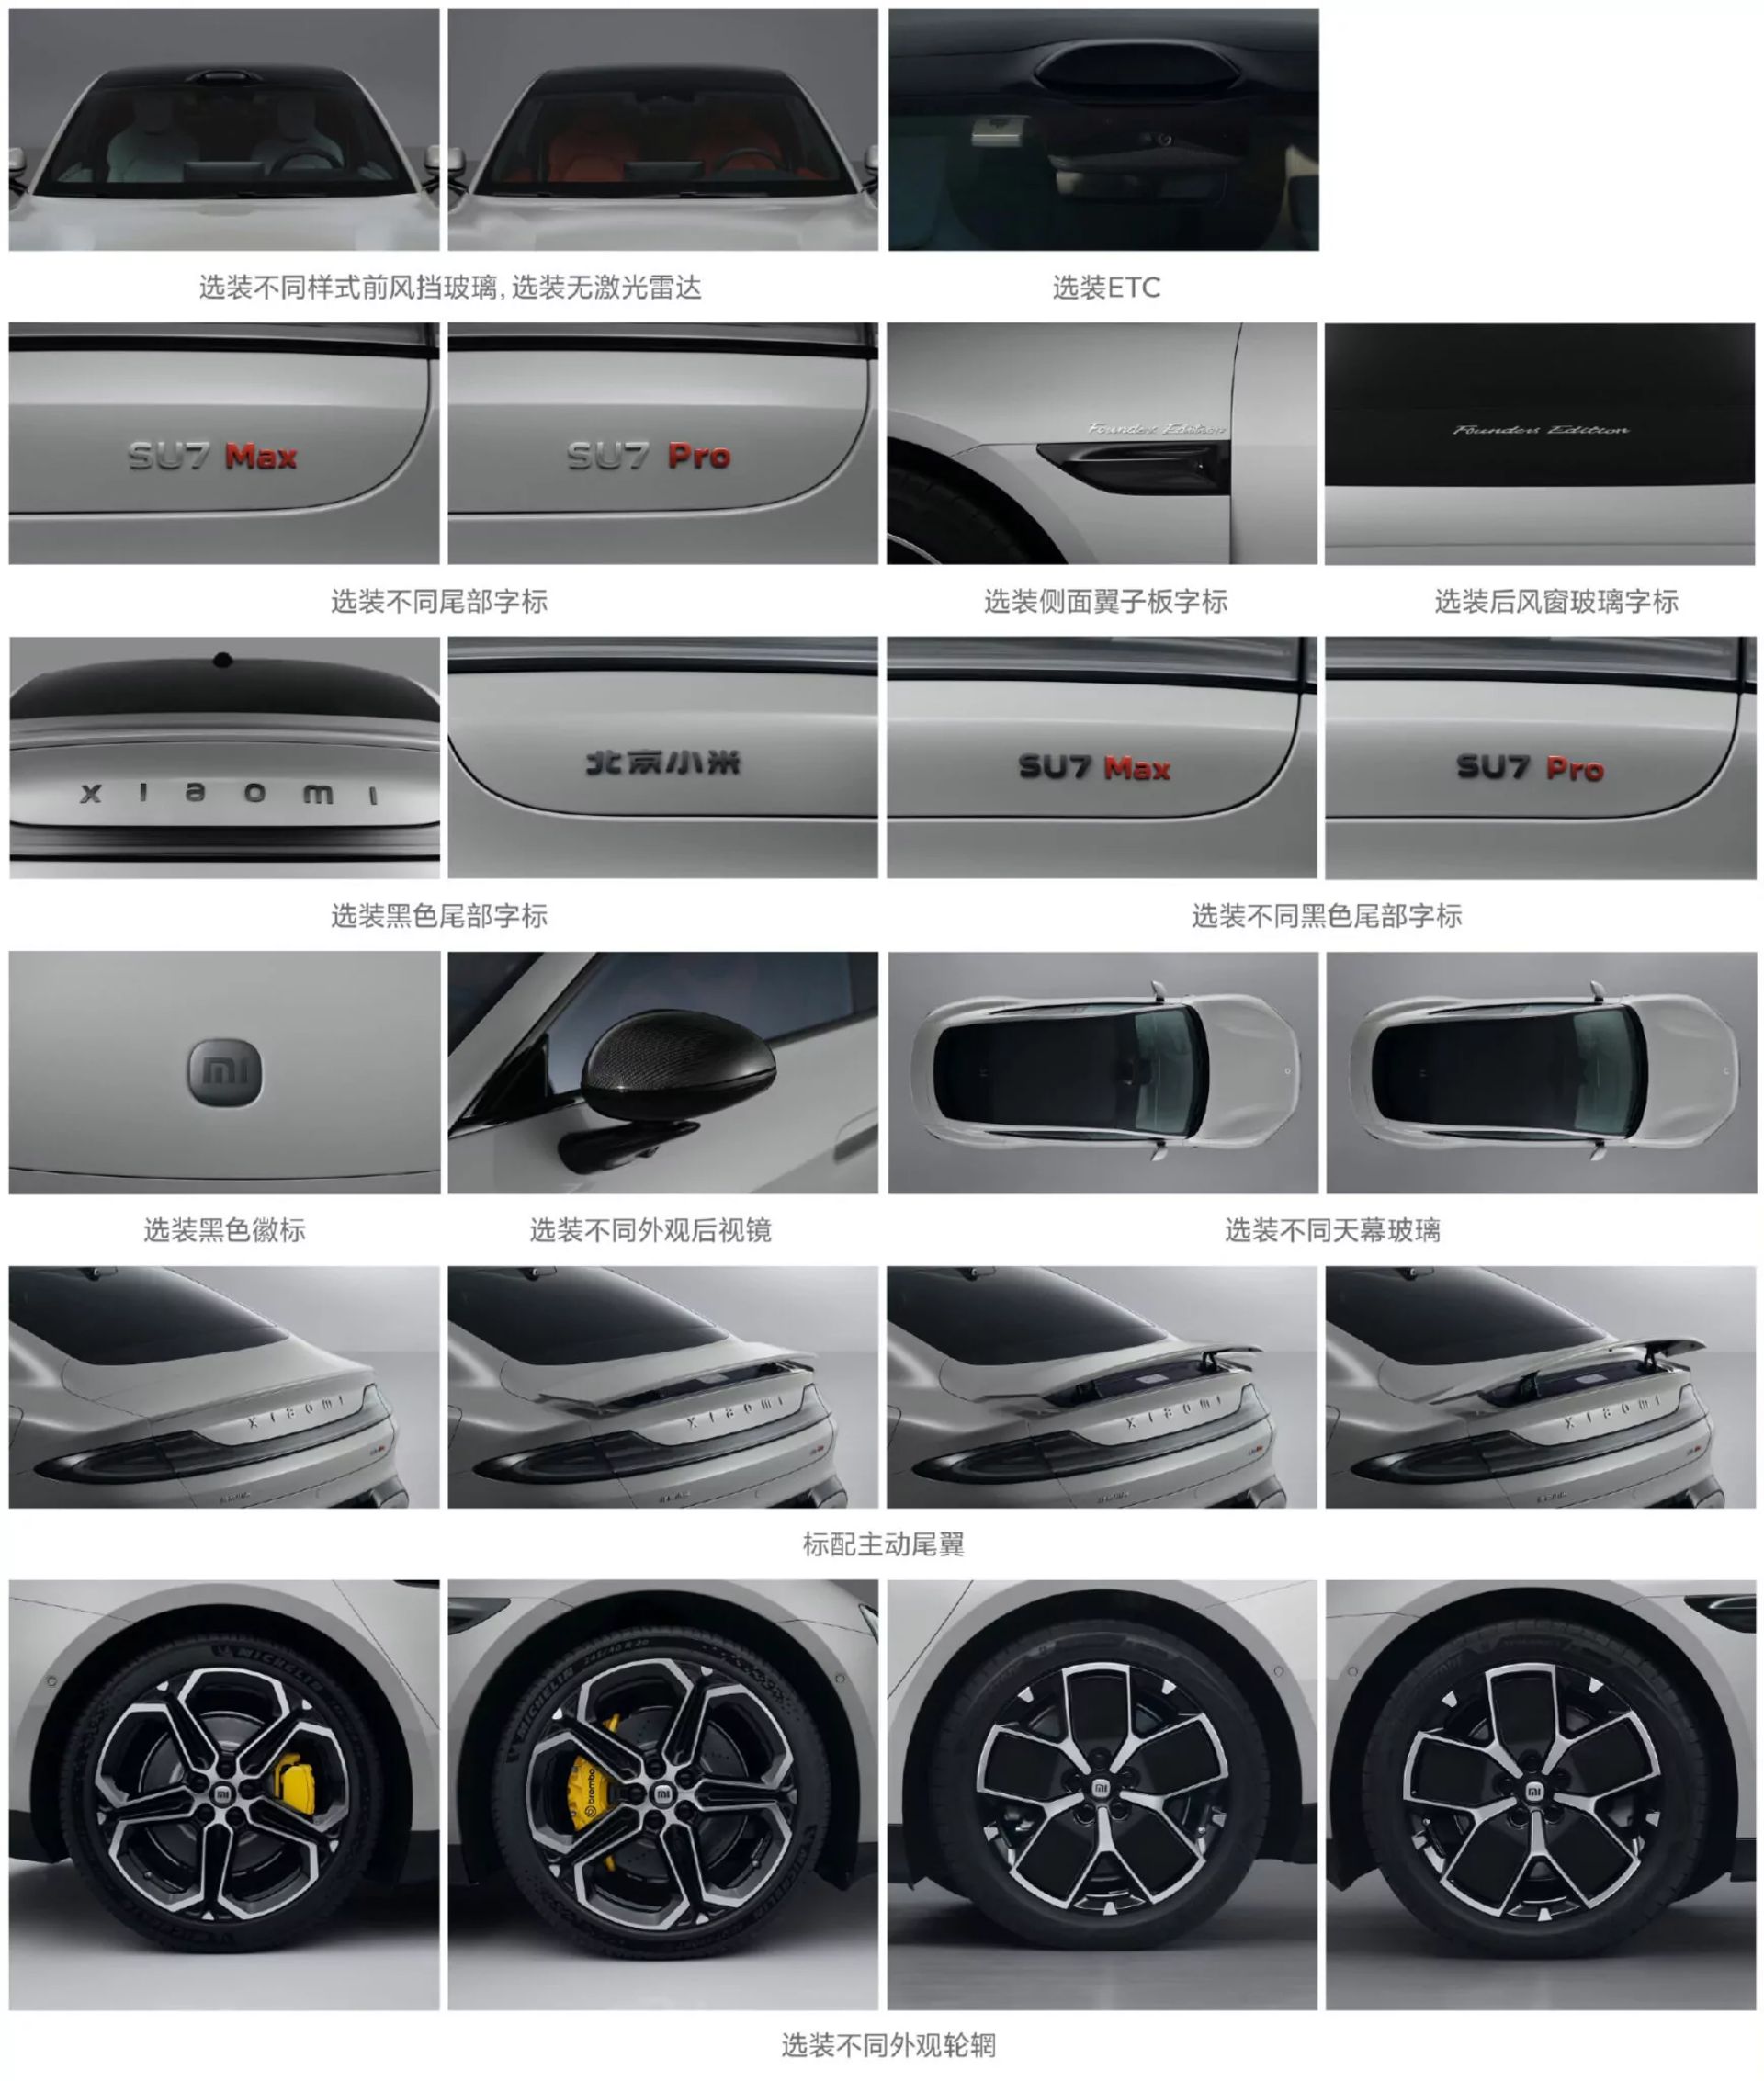 بخش های مختلف خودرو شیائومی SU7 تصویر رسمی